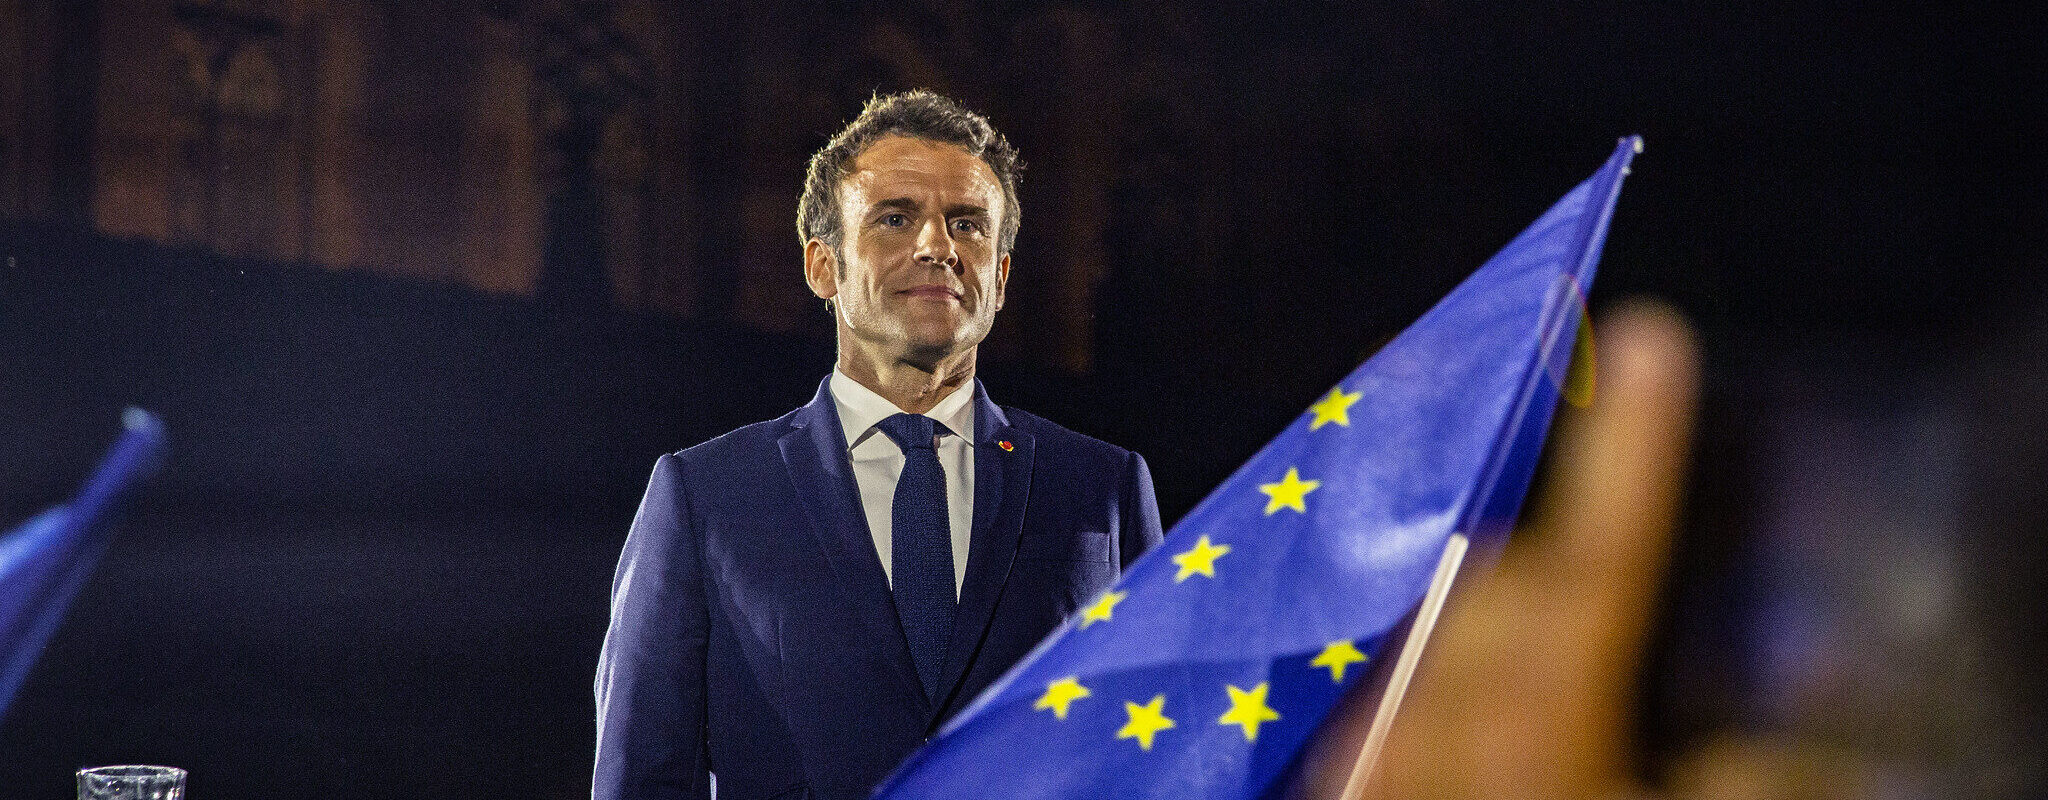 Avec 58% des suffrages exprimés, Emmanuel Macron en tête du second tour de l’élection présidentielle